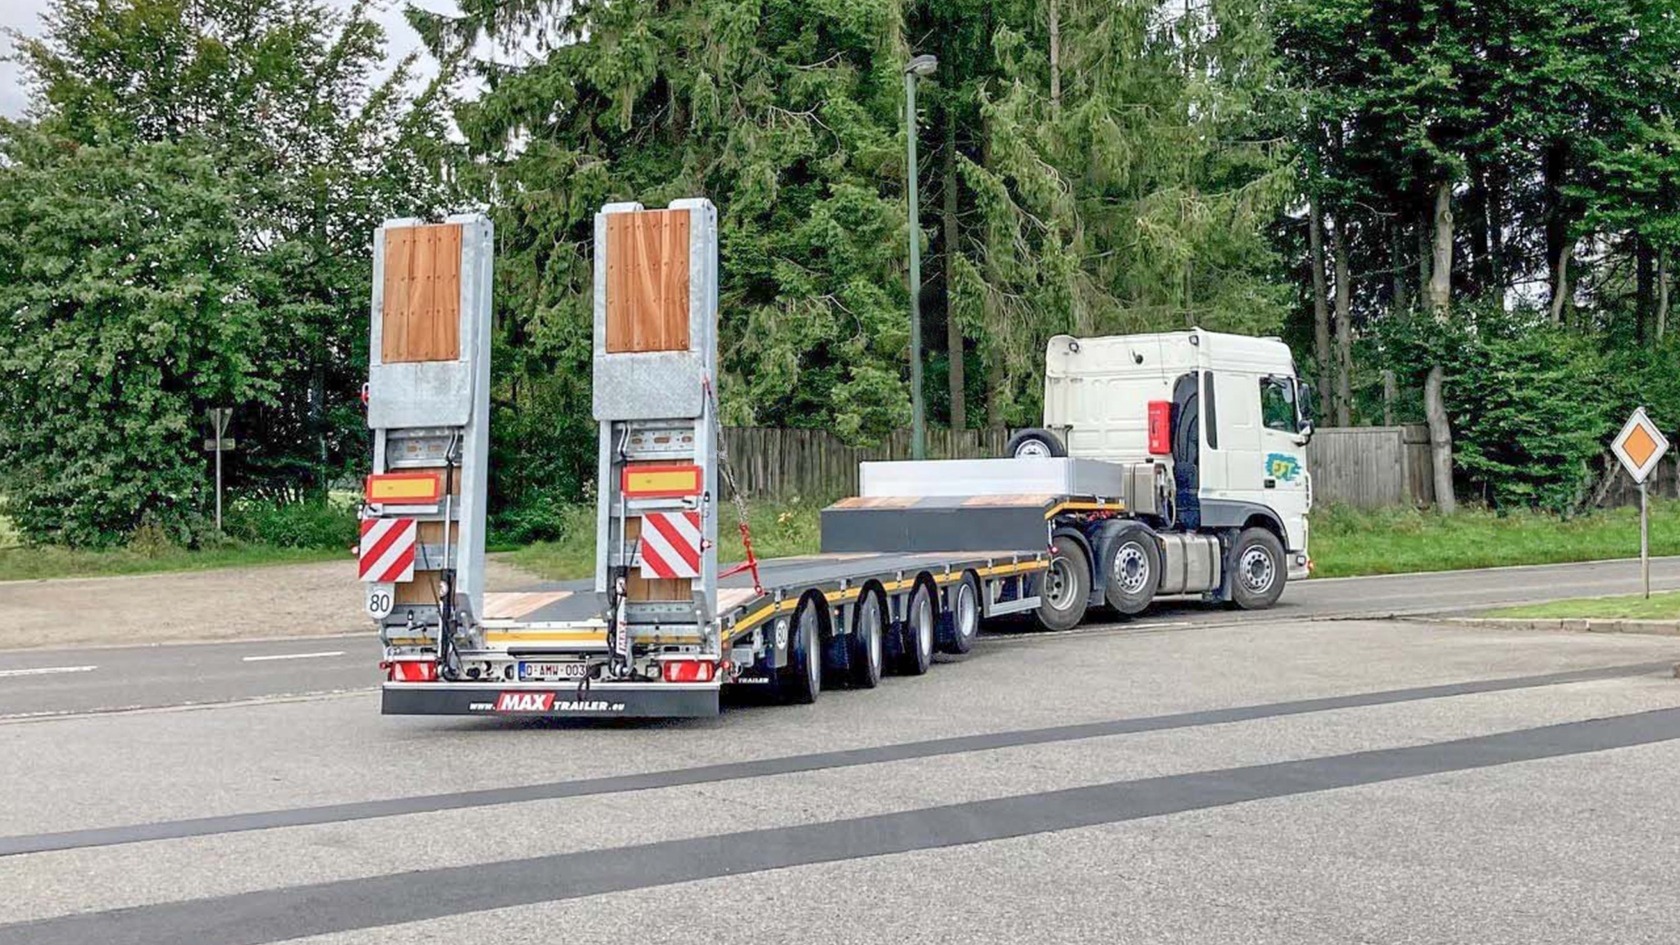 A new 3-axle semi-trailer MAX100 for Euro Famenne Trucks